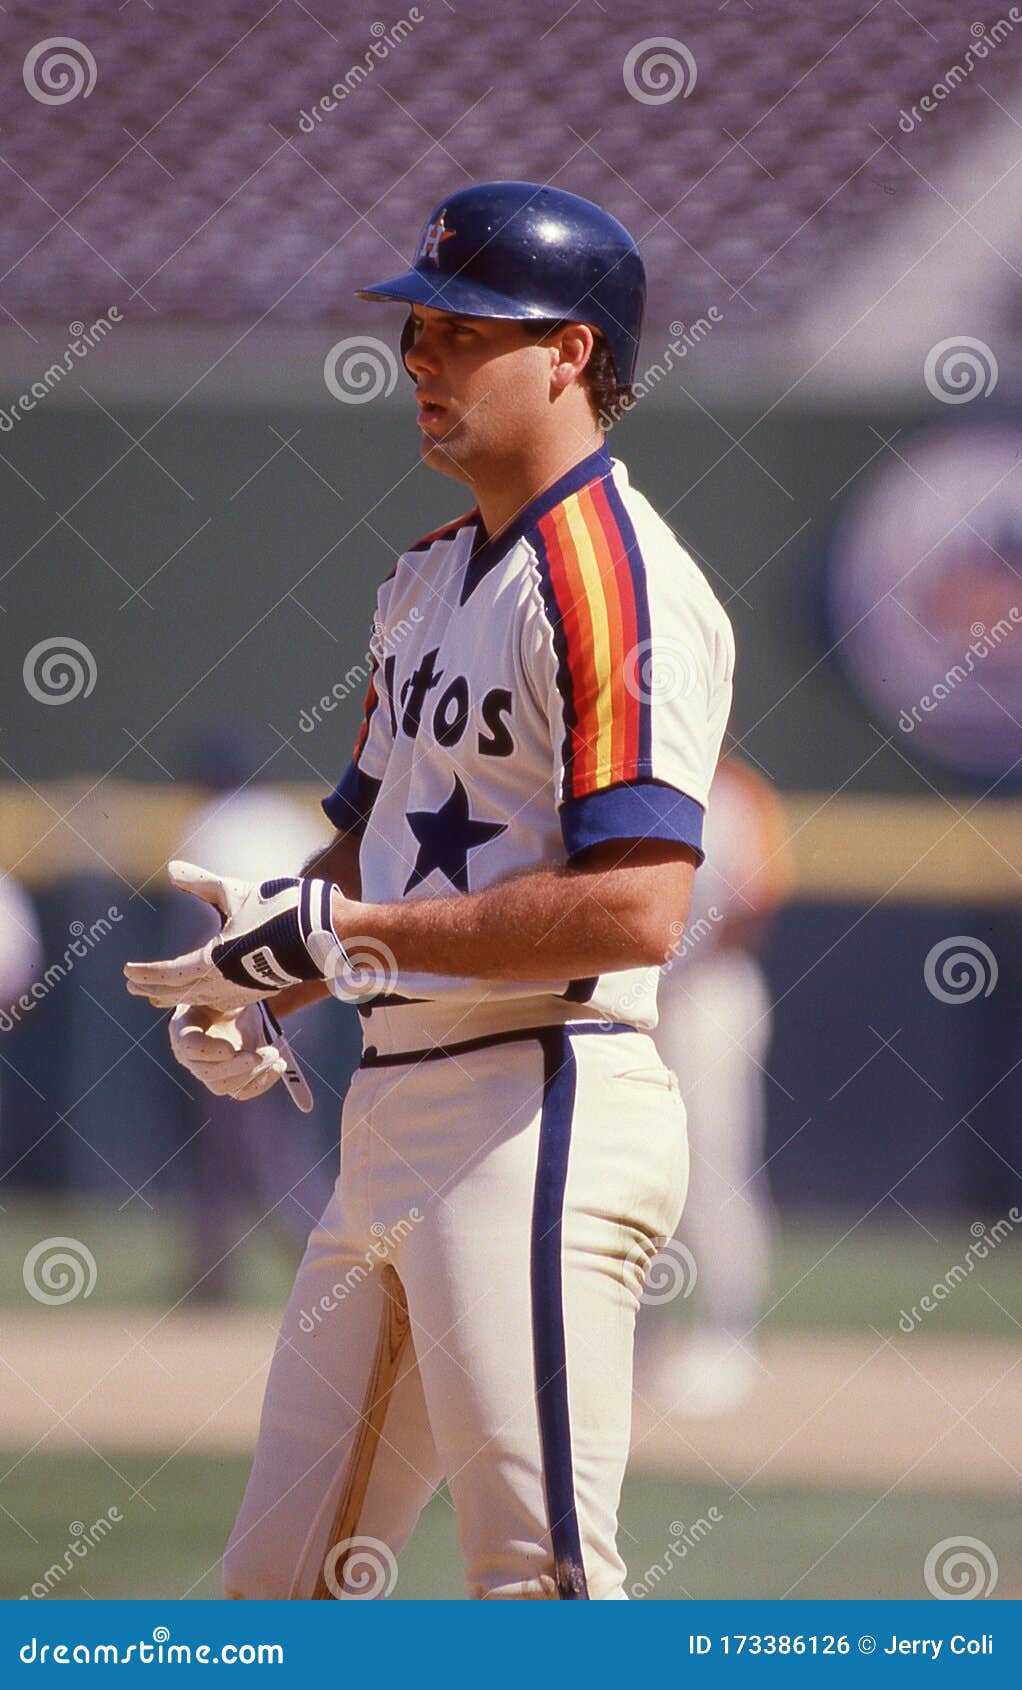 Ken Caminiti  Houston astros baseball, Astros baseball, Houston astros